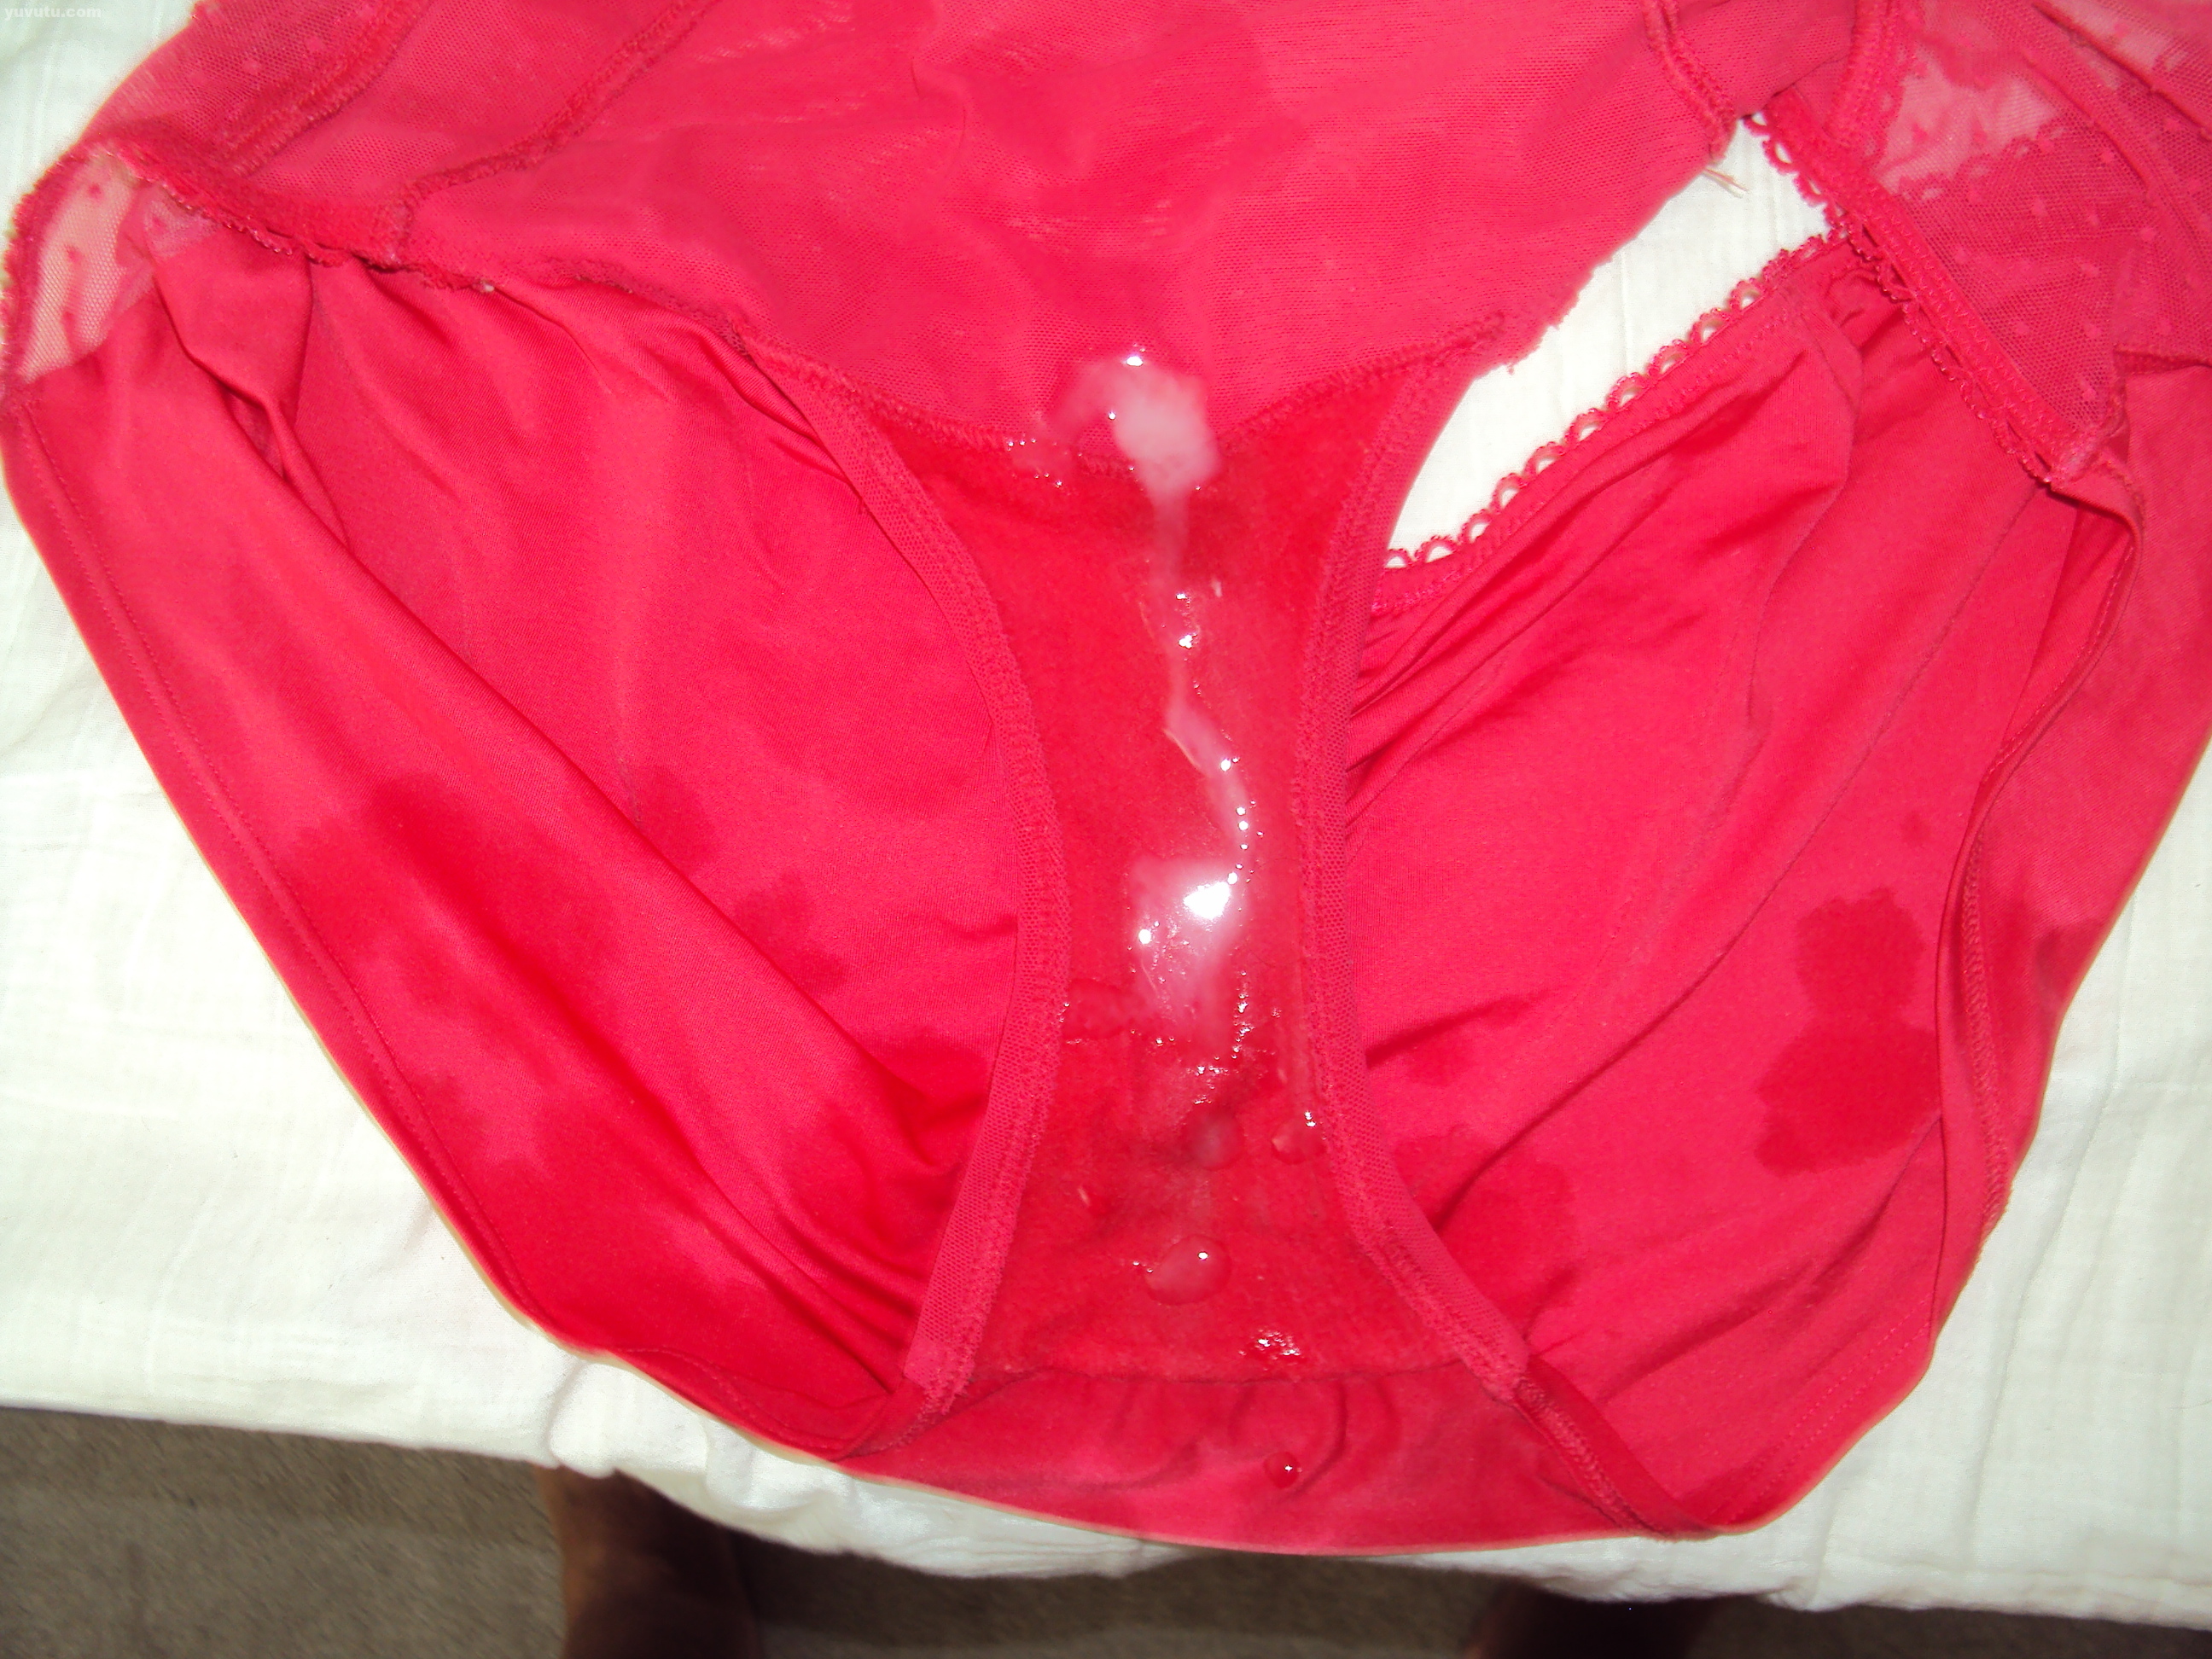 Amateur Wet Panties Cum - Red Wee and Cum Shot in wet panties - Stockings On Yuvutu ...